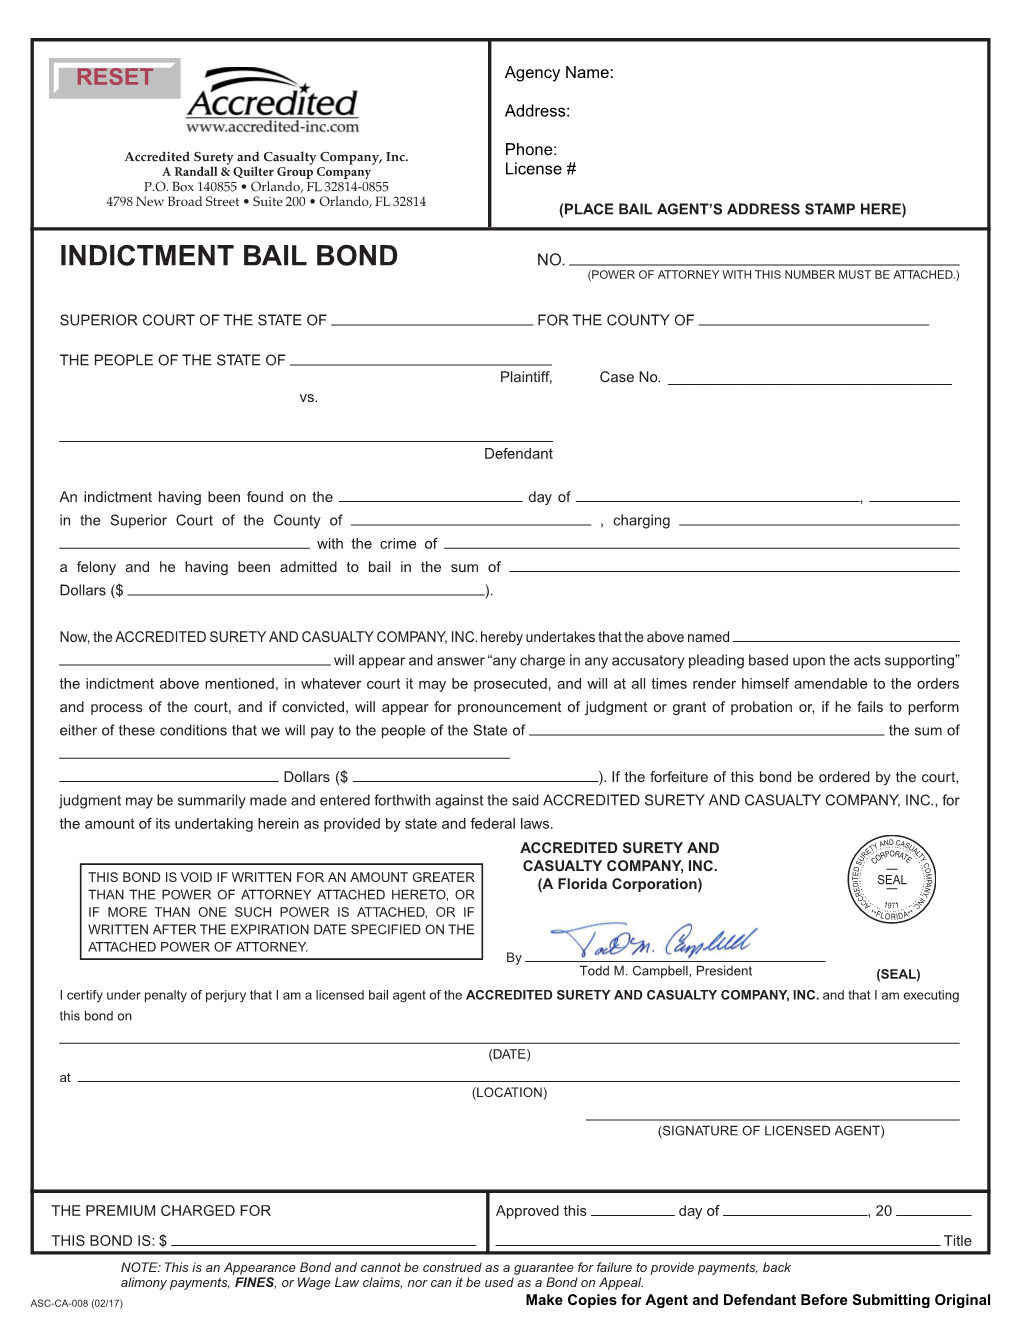 Indictment Bail Bond Face Sheet